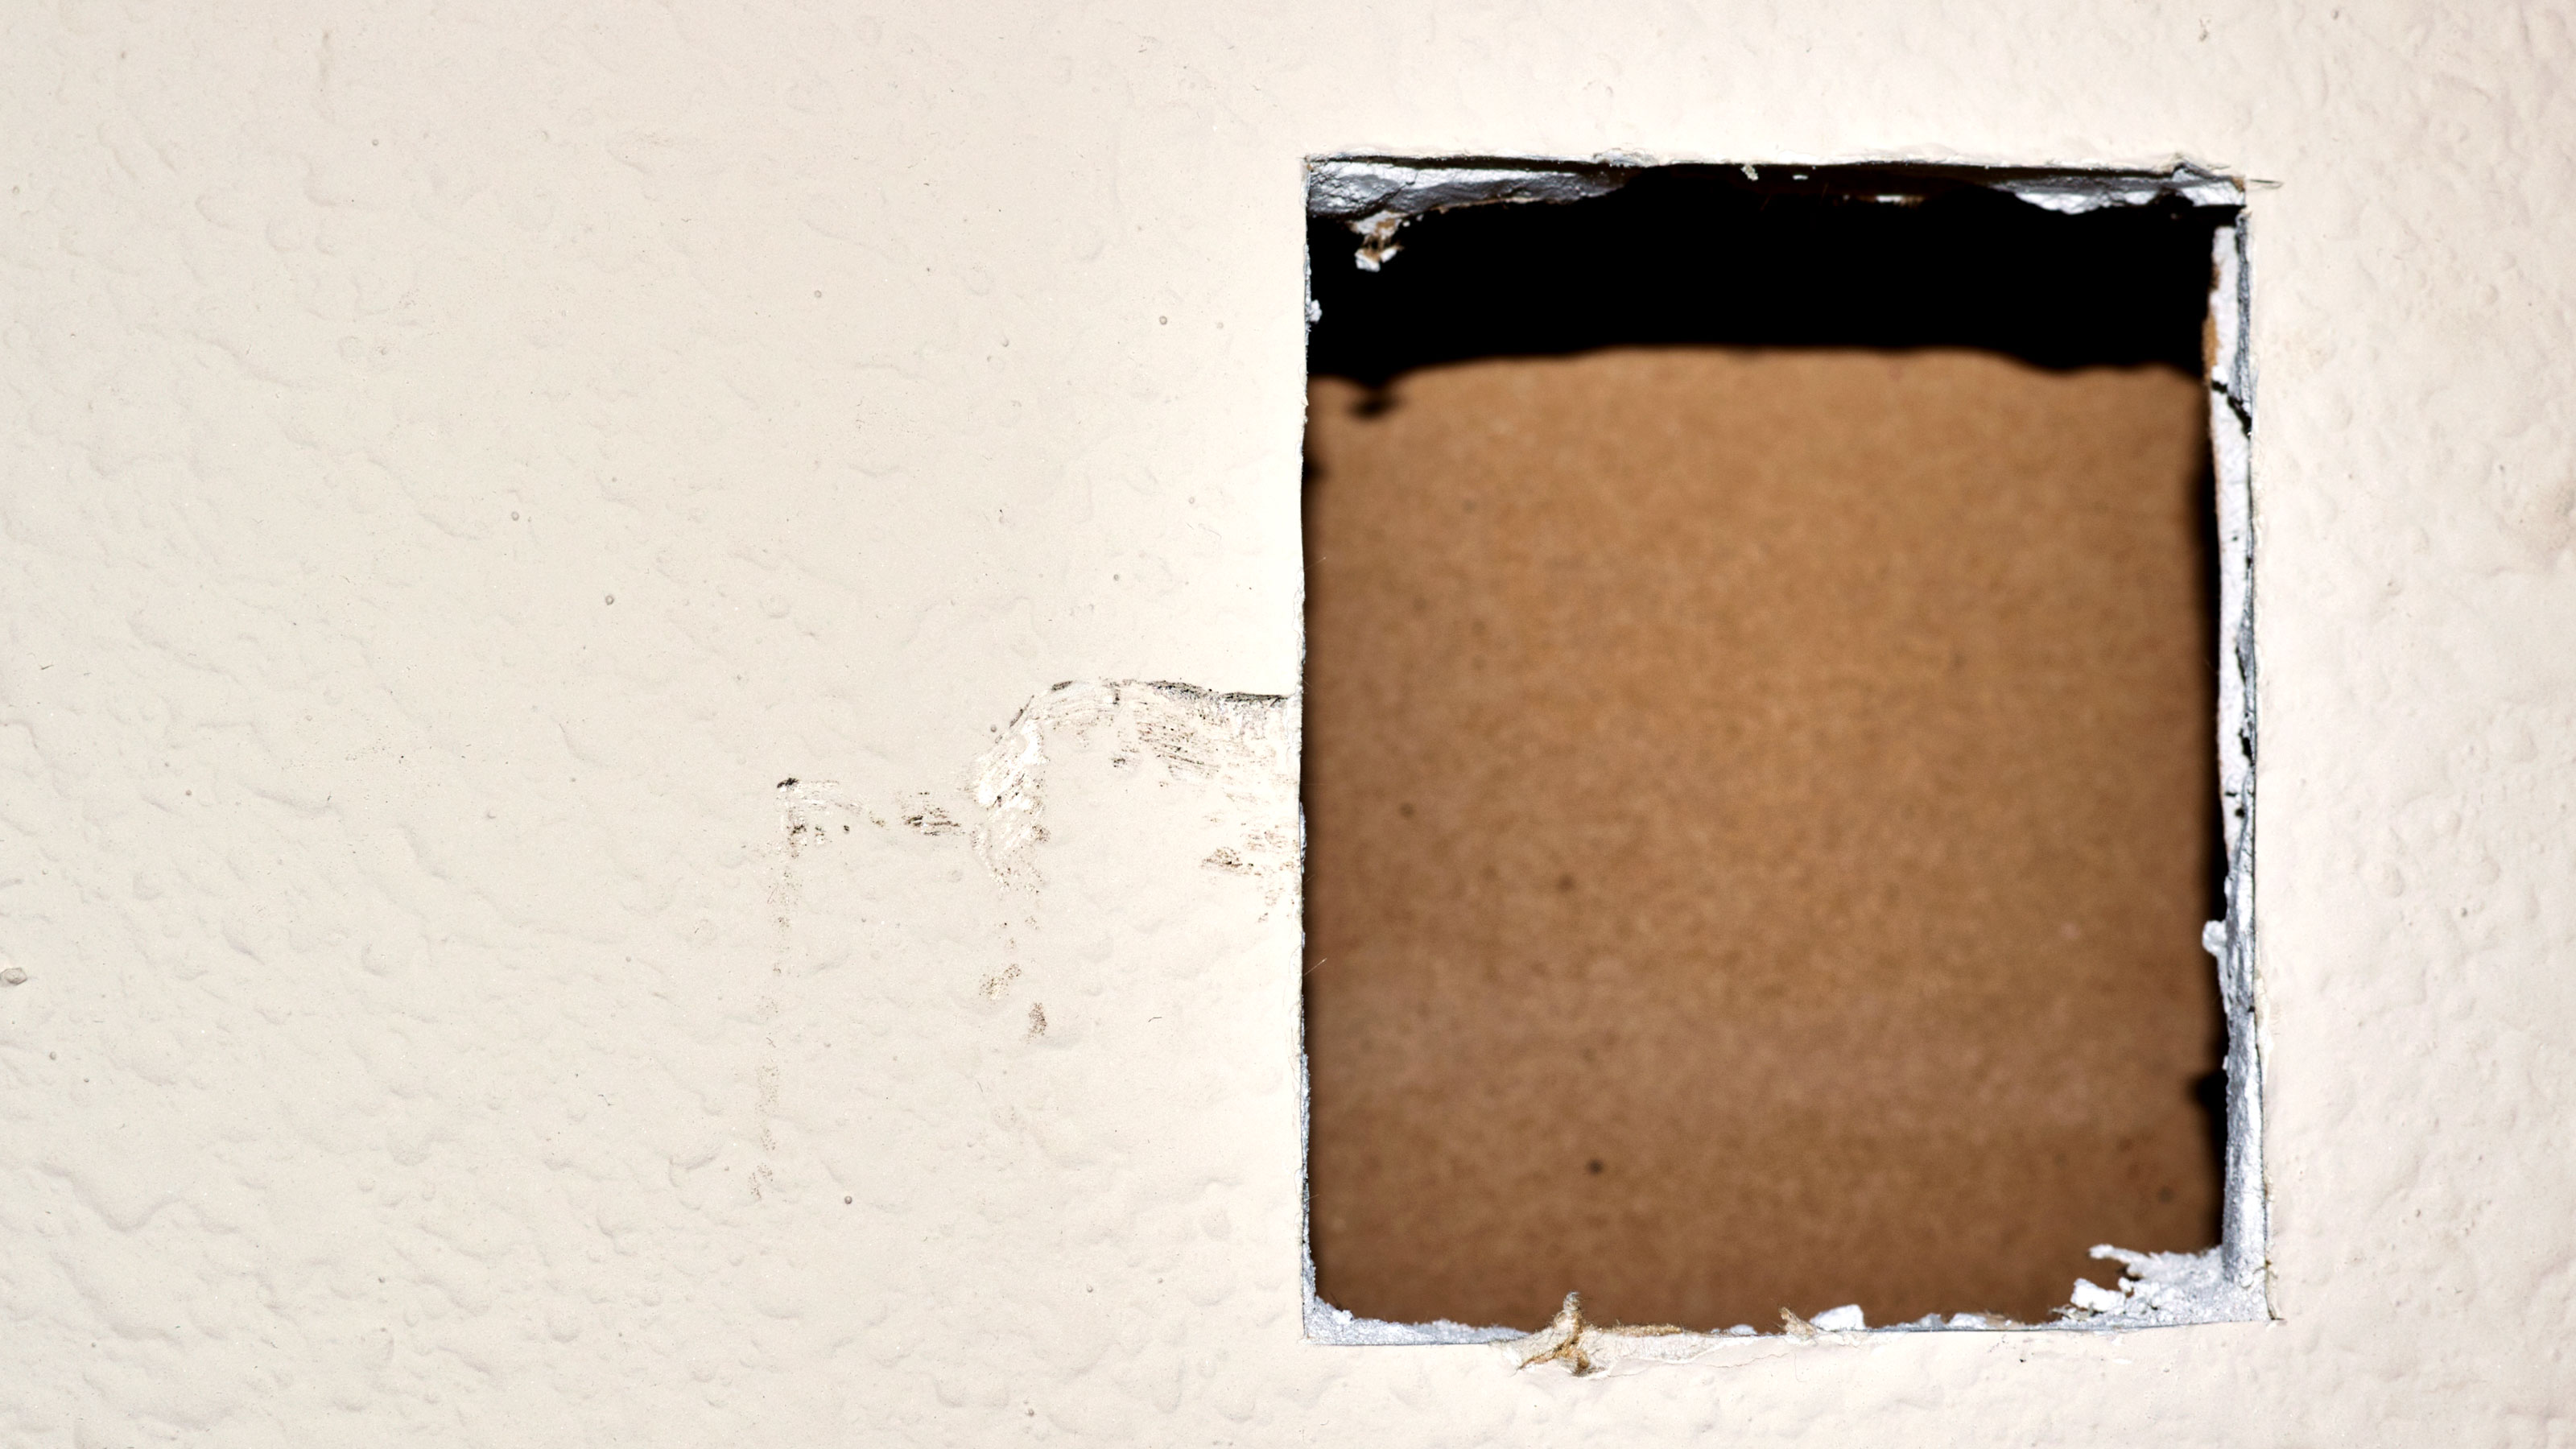 Löcher in Gipskartonplatten ausbessern: Ein Leitfaden zum Ausbessern von Wänden